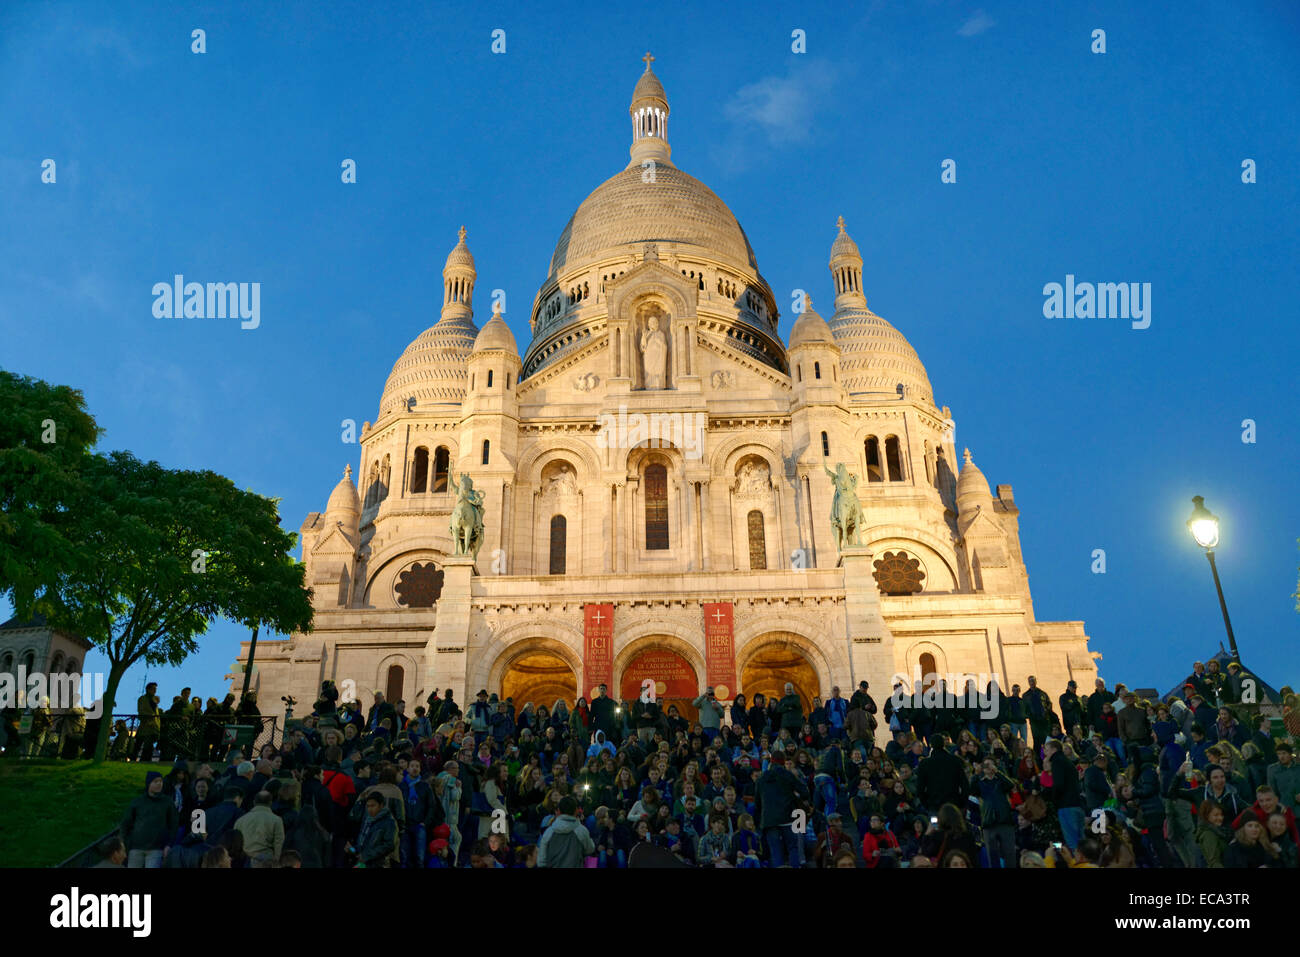 Sacré-Cœur basilica on Montmartre hill at dusk, Paris, France Stock Photo